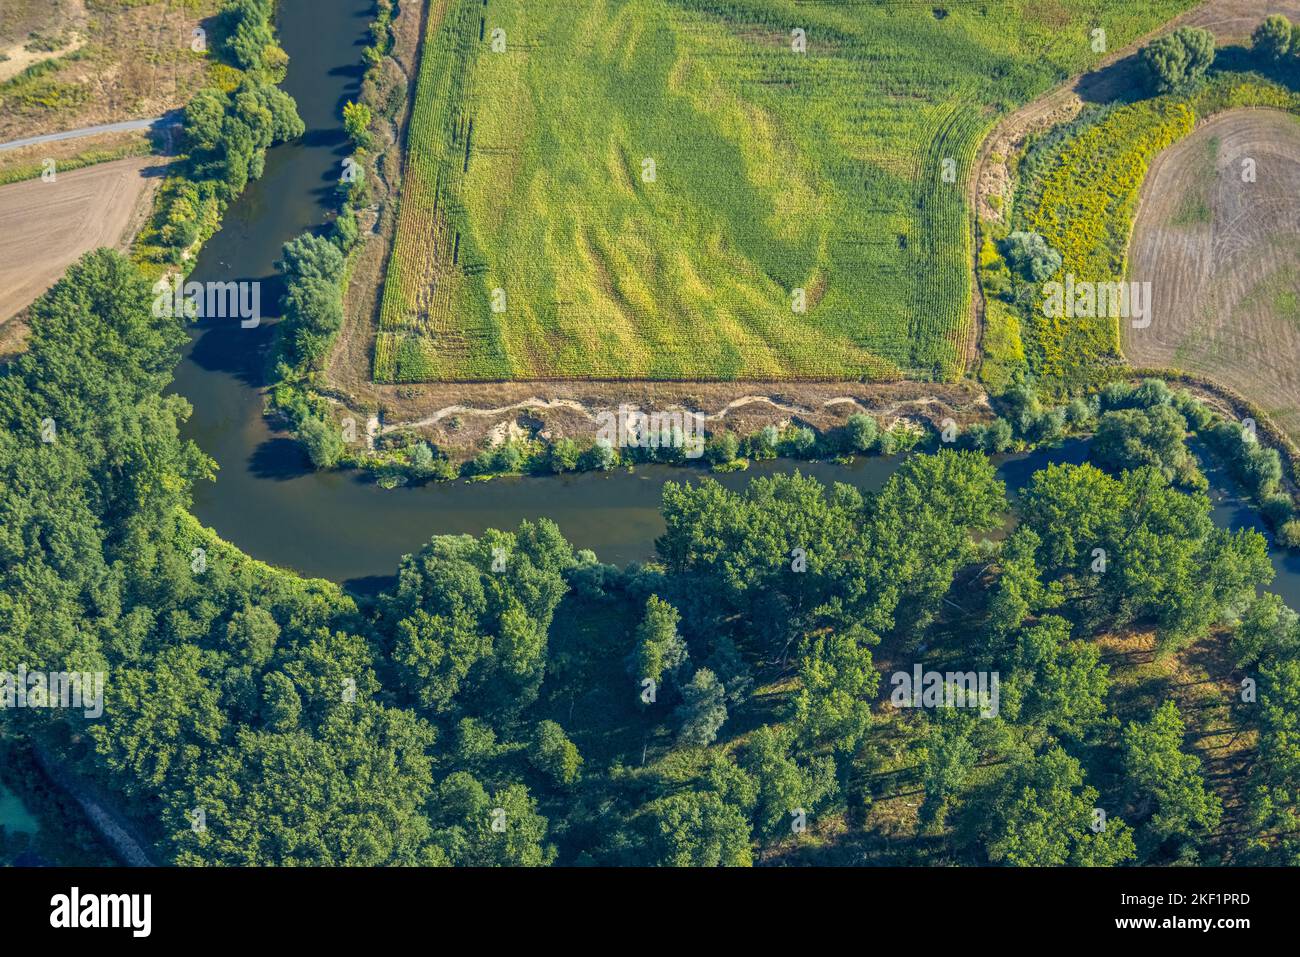 Vista aerea, fiume Lippe, corso del fiume ad angolo retto, fiume e sviluppo di pianura alluvionale del Lippe Vogelsang, rinaturazione, sandbank NSG Lippeaue, cit Foto Stock